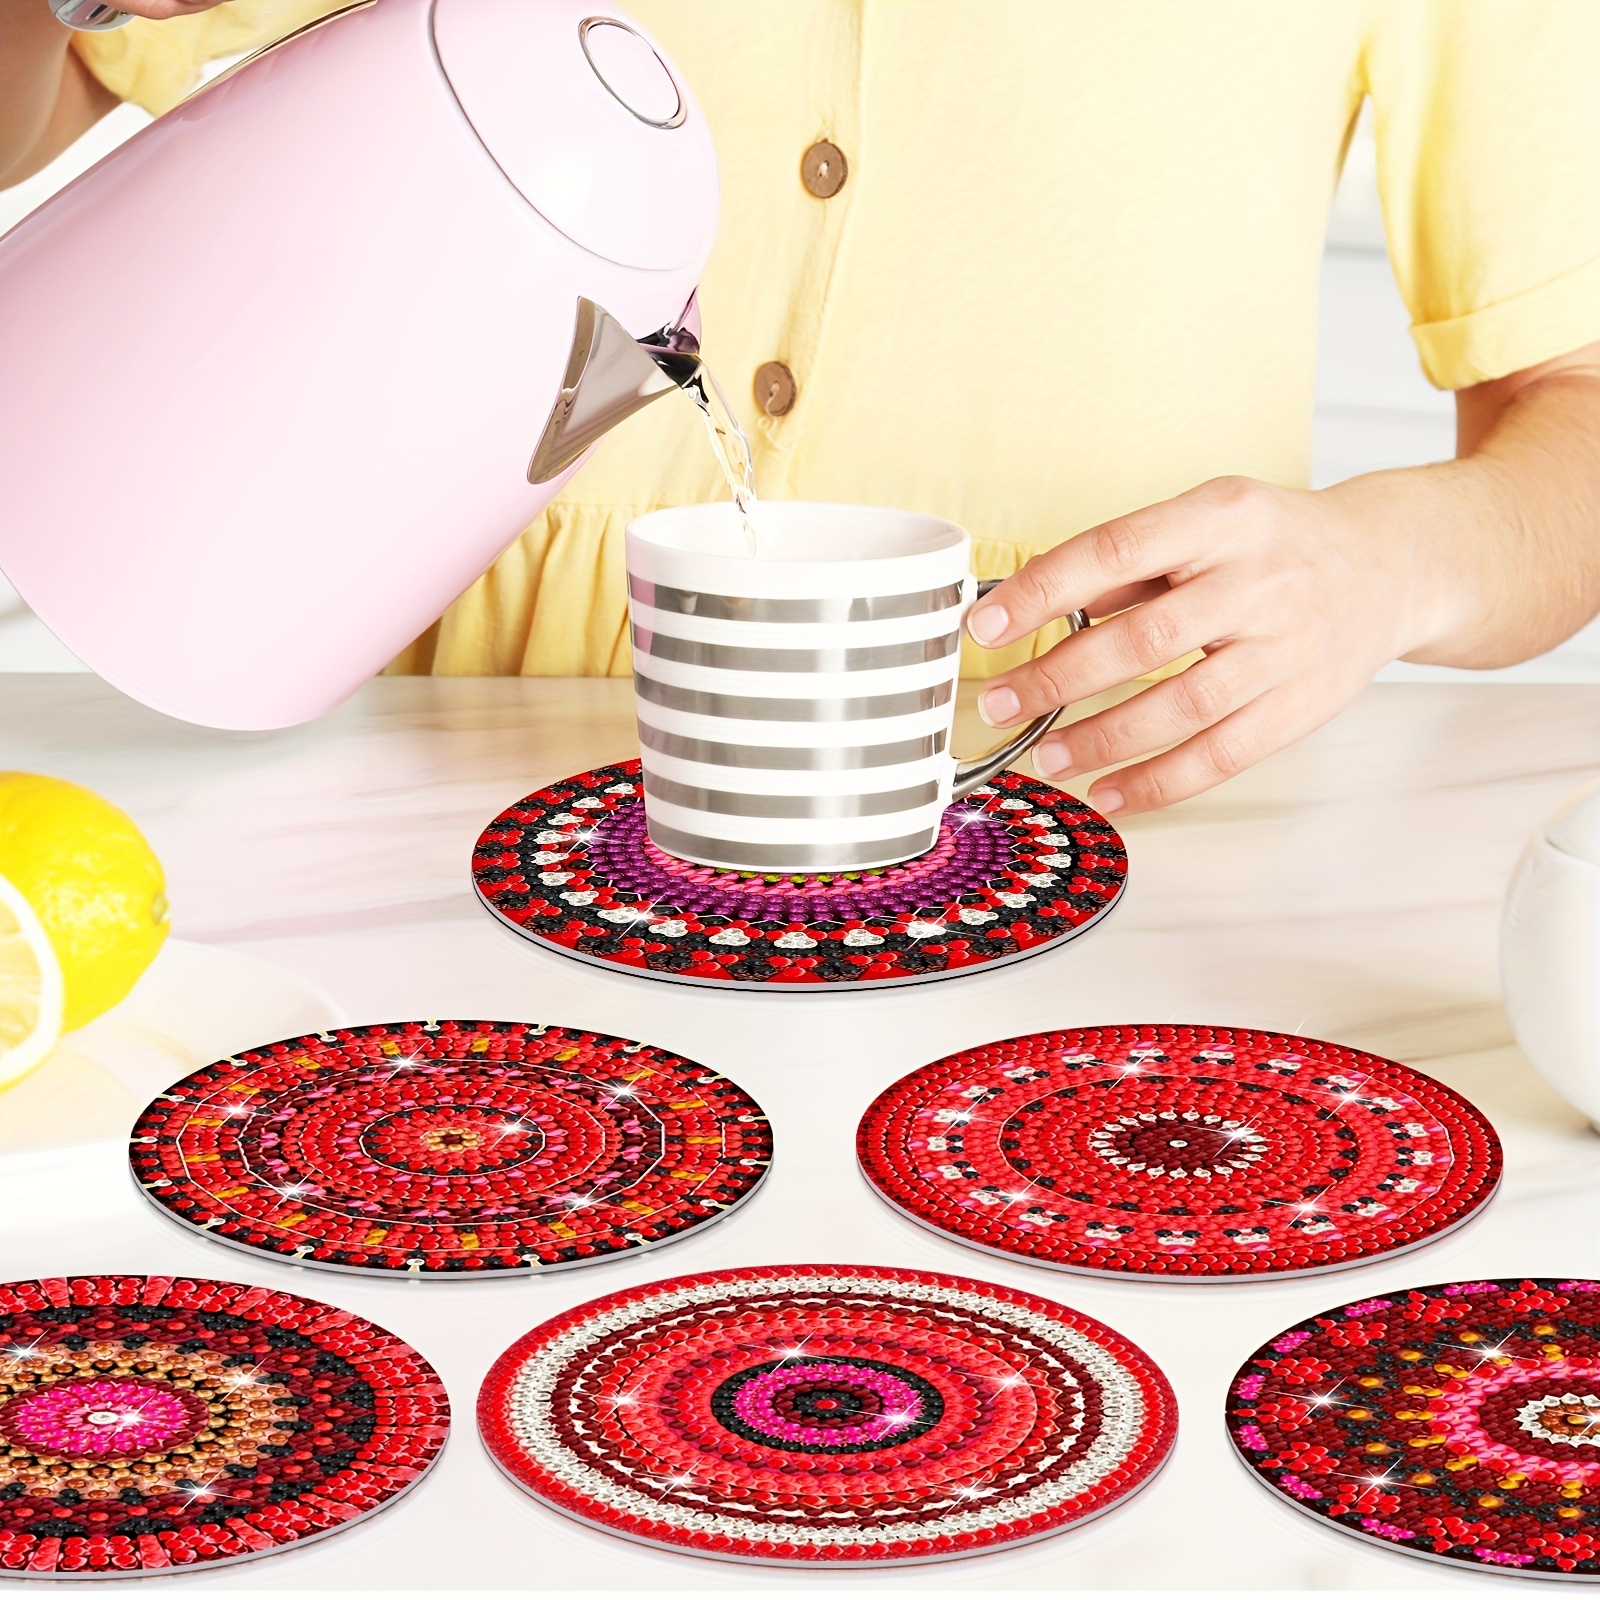  Kit de pintura para tazas de cerámica para adultos